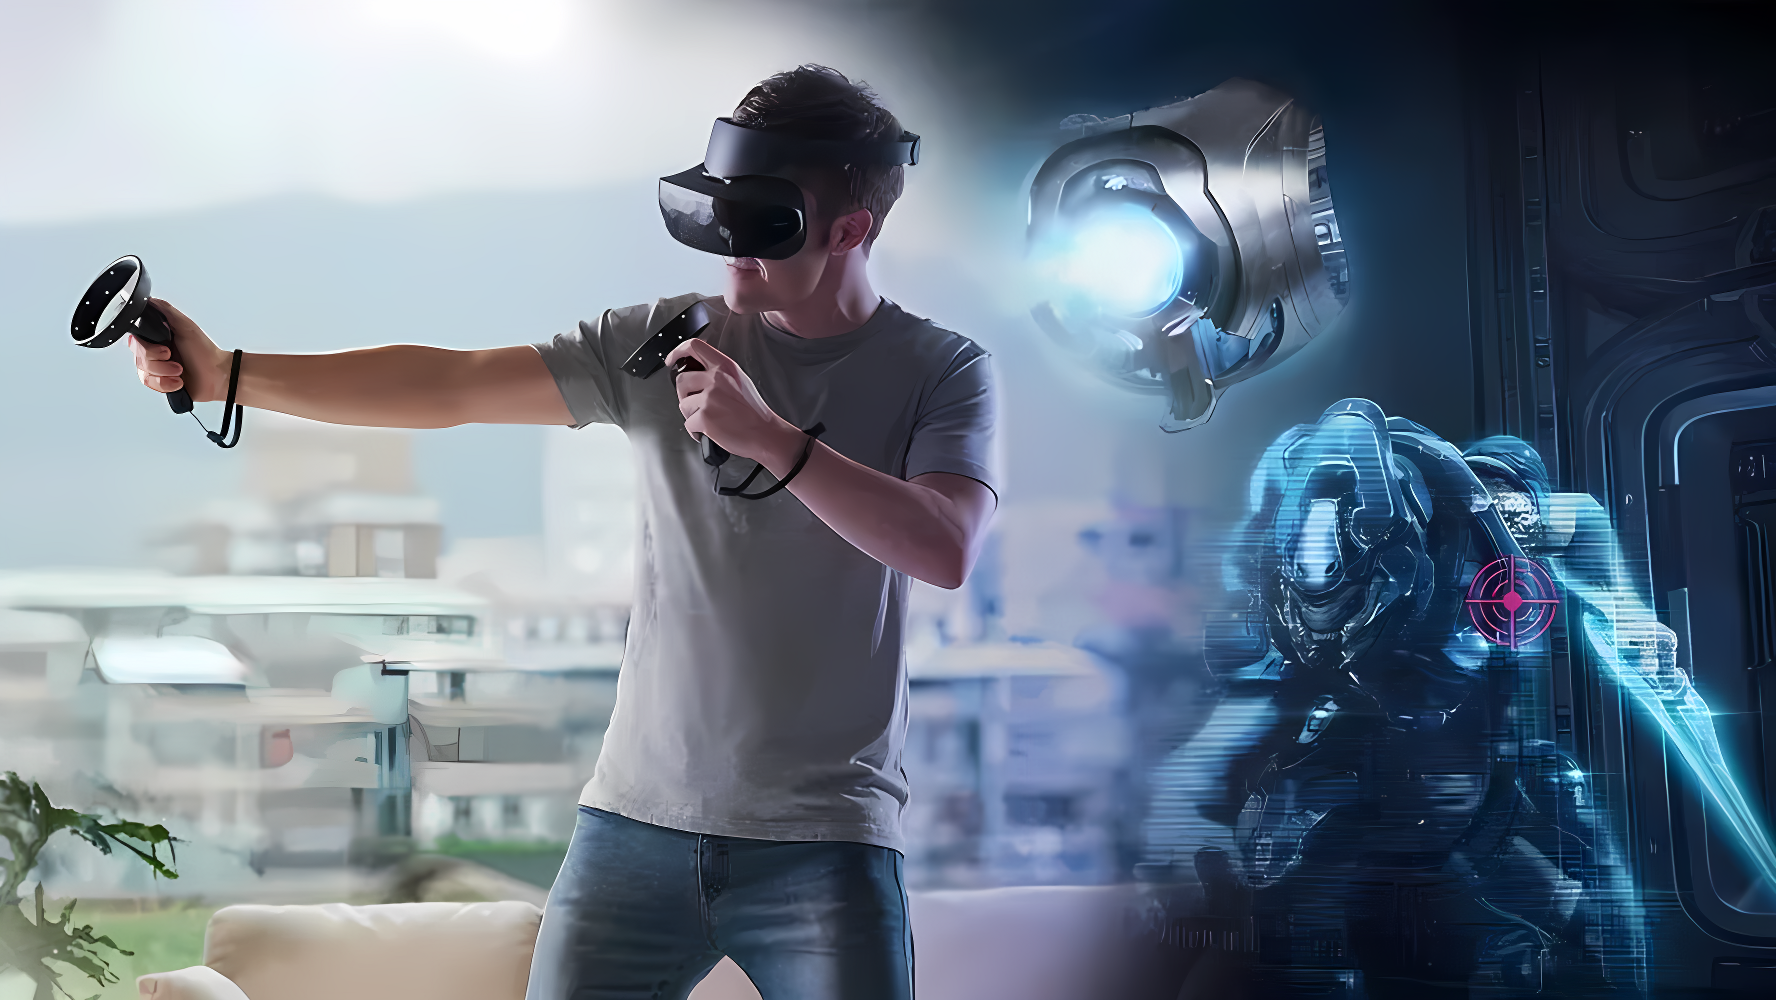 图片展示一位男子戴着虚拟现实头盔，正站在客厅中，似乎在体验沉浸式游戏，背景含有科幻元素。